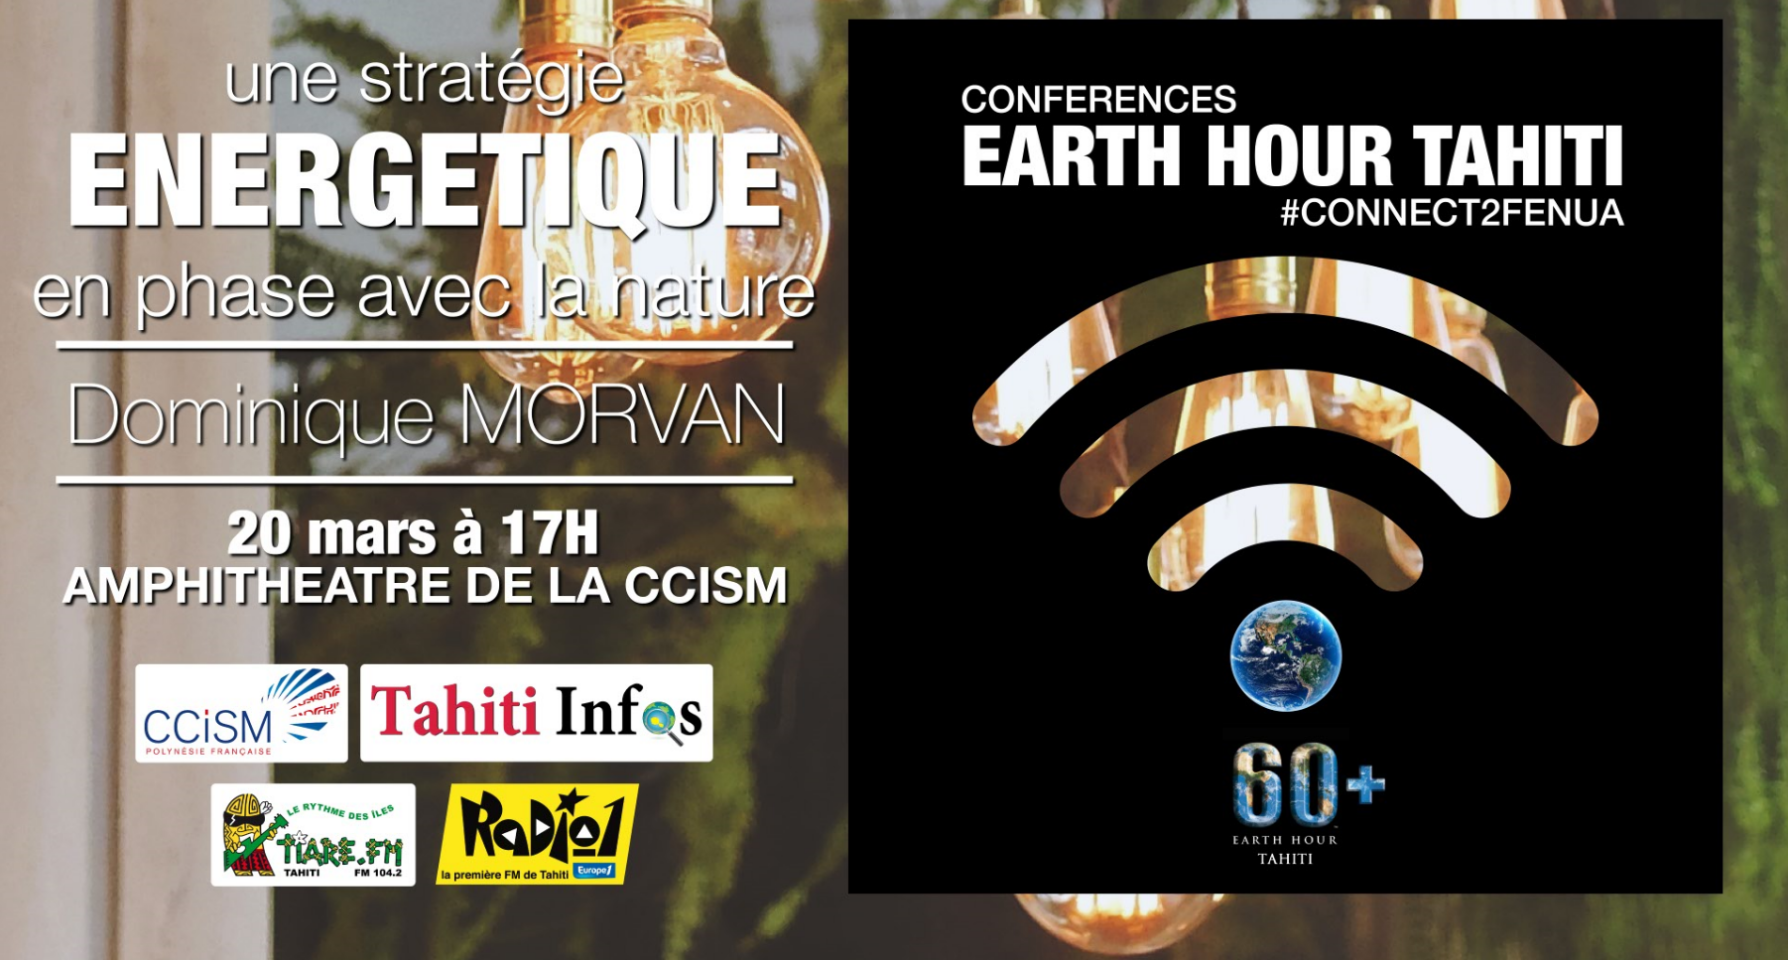 Earth Hour Tahiti : " Restez connectés avec la nature "